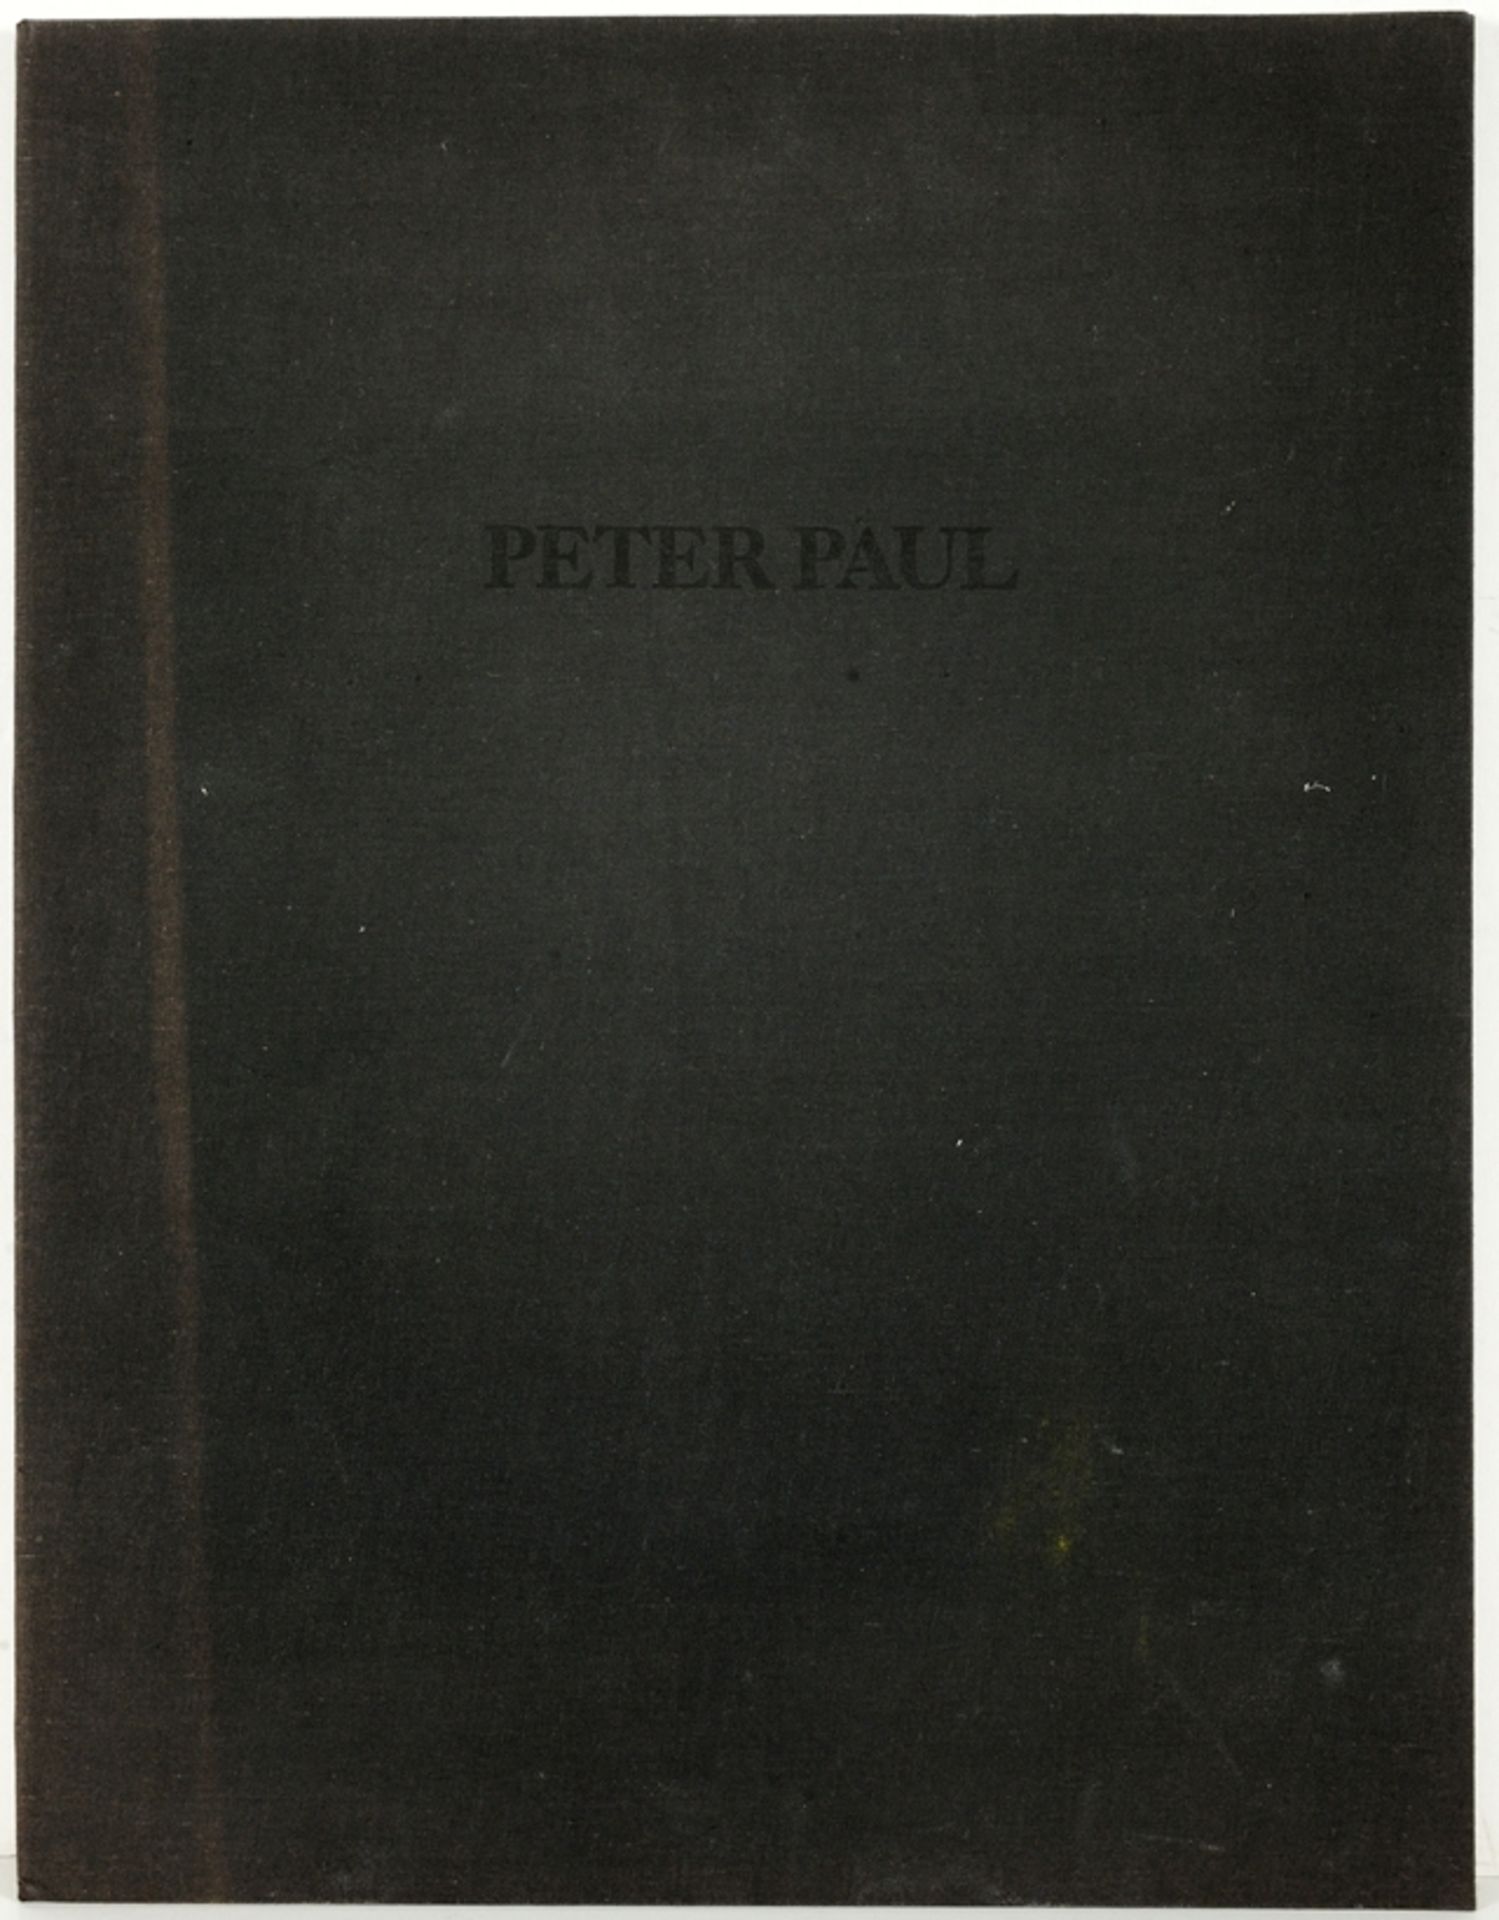 PETER PAUL - Image 5 of 5